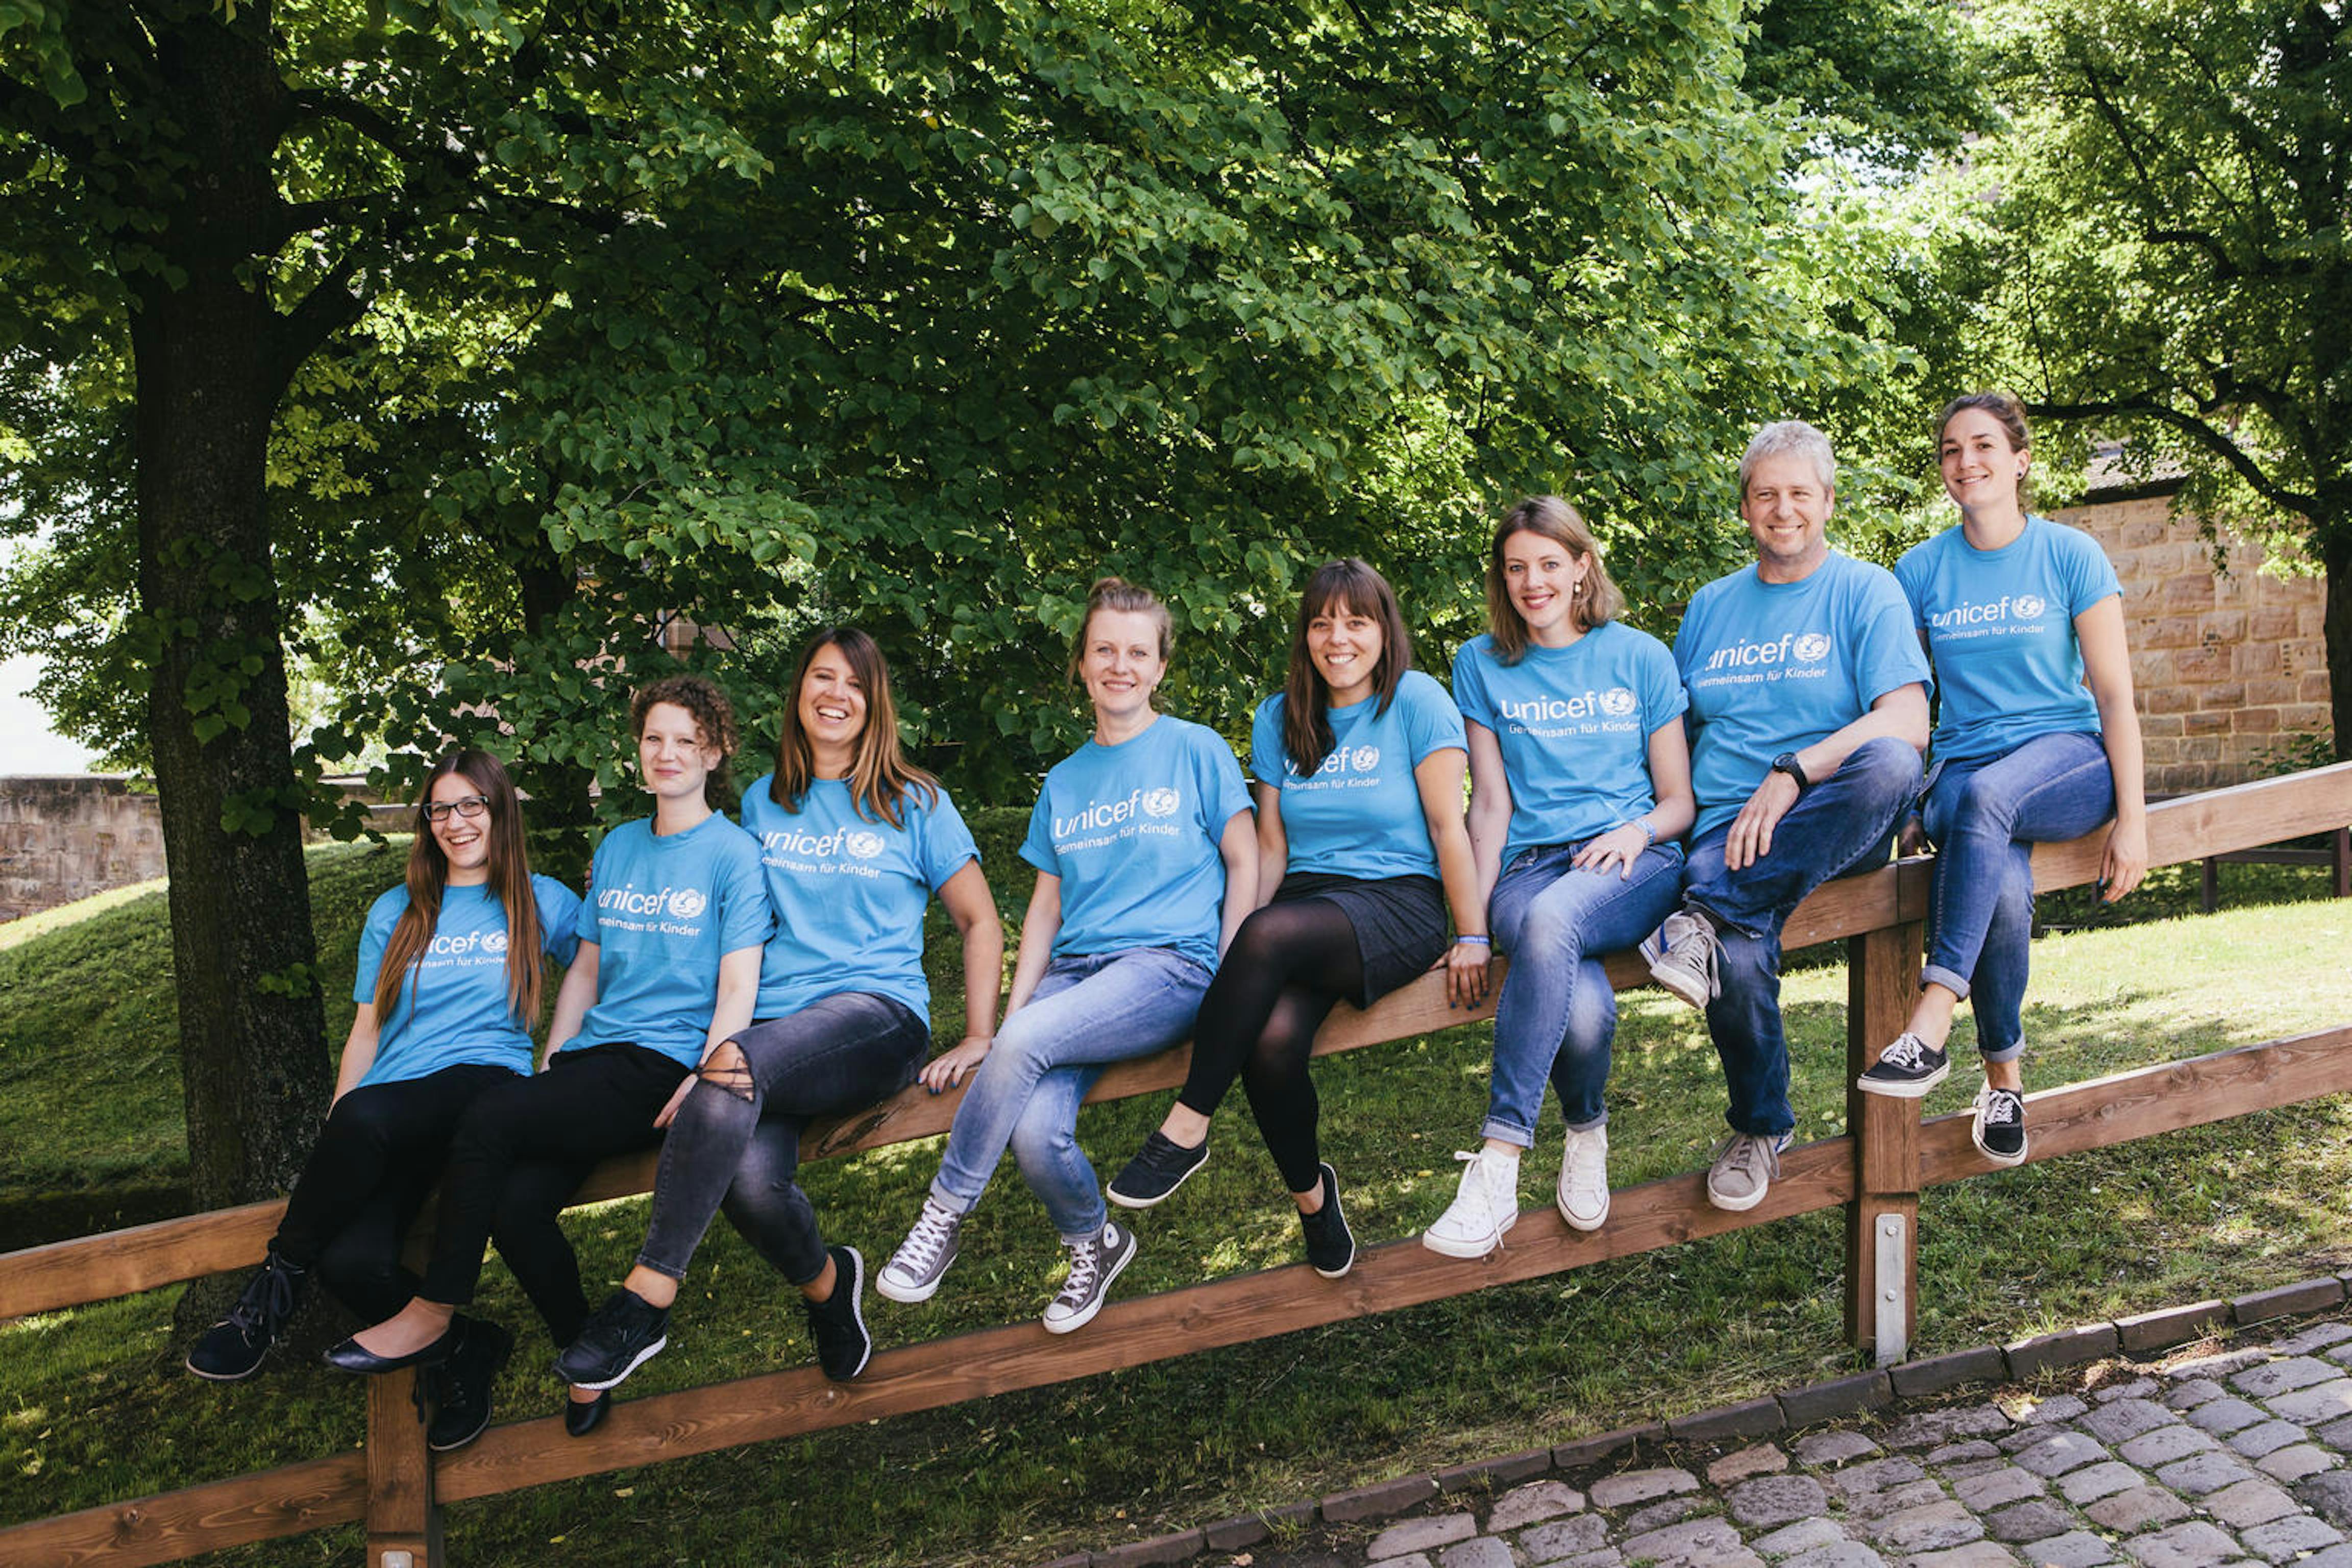 Ragazzi adolescenti sorridono, indossando la maglietta UNICEF, allo Youth Festival di Norimberga.